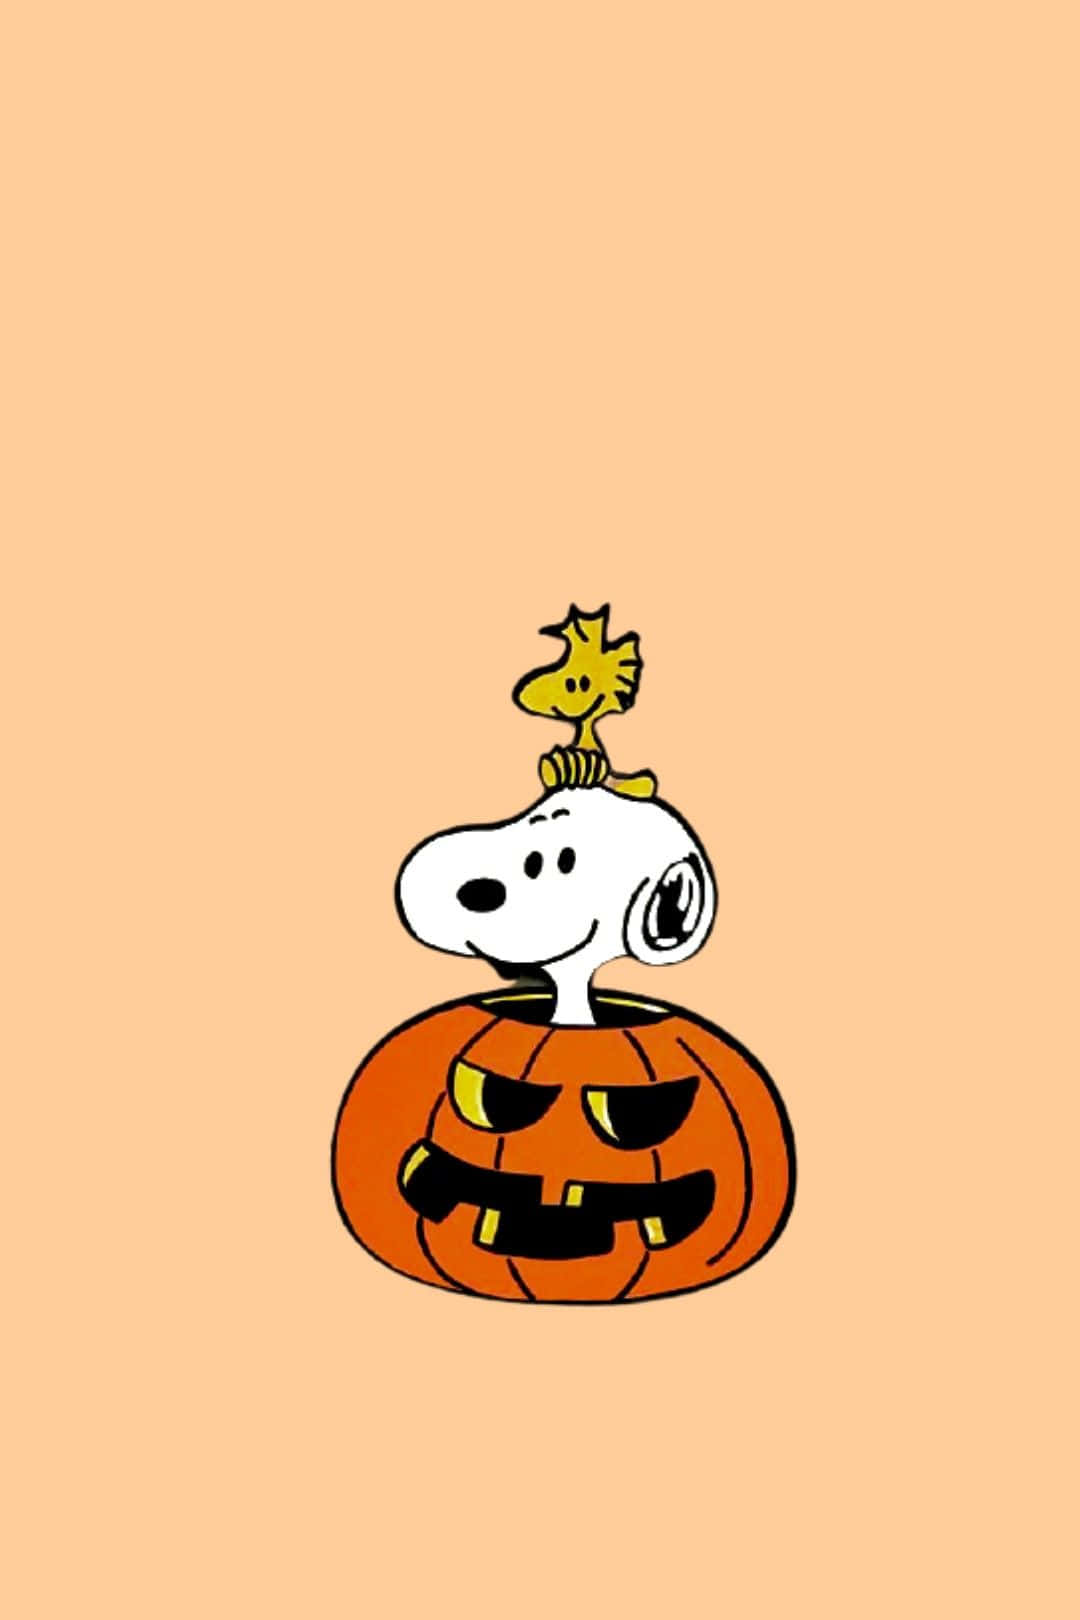 Fejr den flotte efterårsstemning med Snoopy. Wallpaper